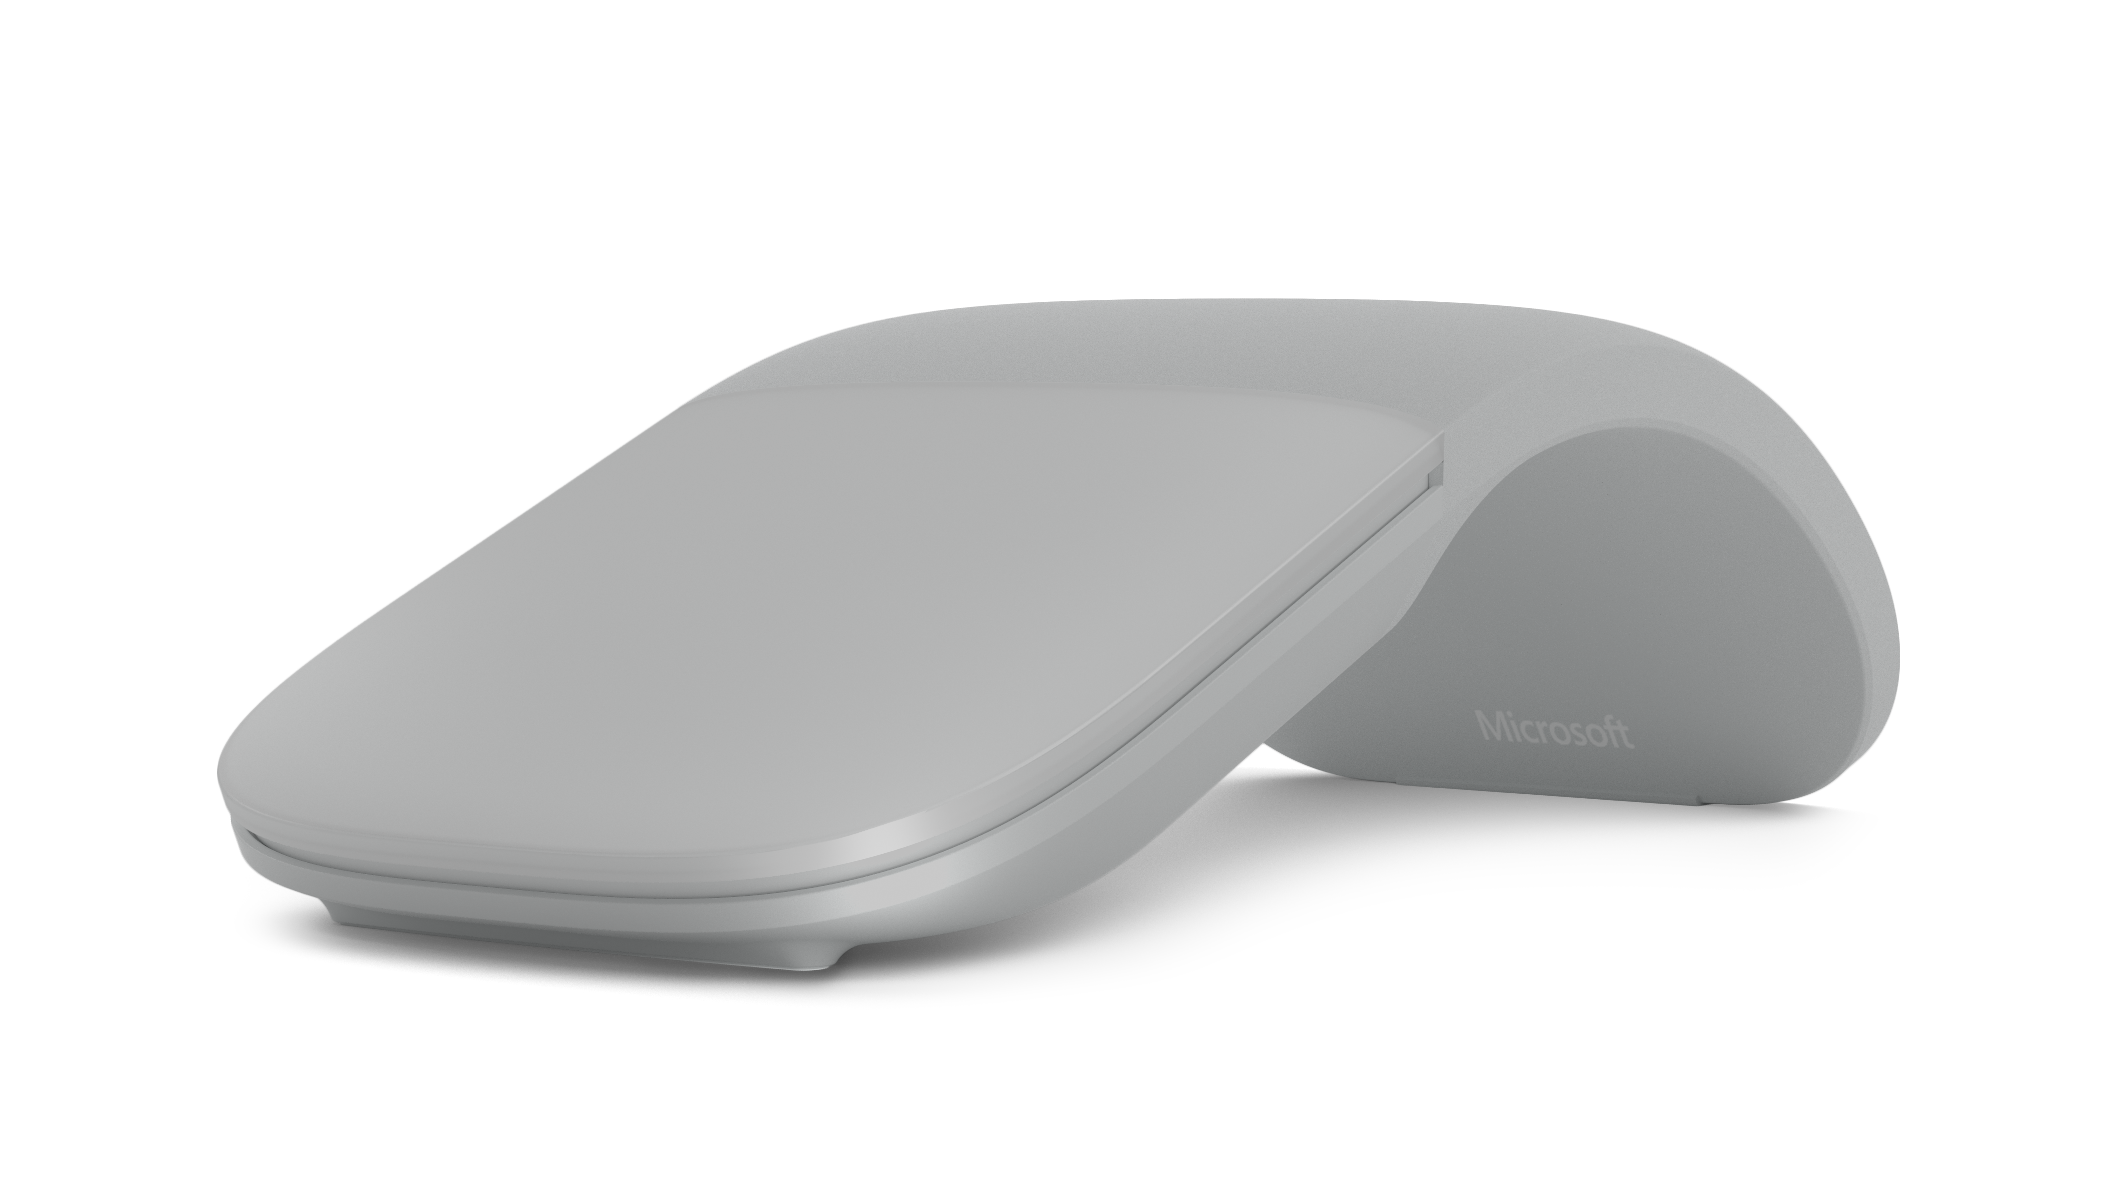 Surface アーク マウス (ライトグレー)(Microsoft)格安バーゲンまとめ